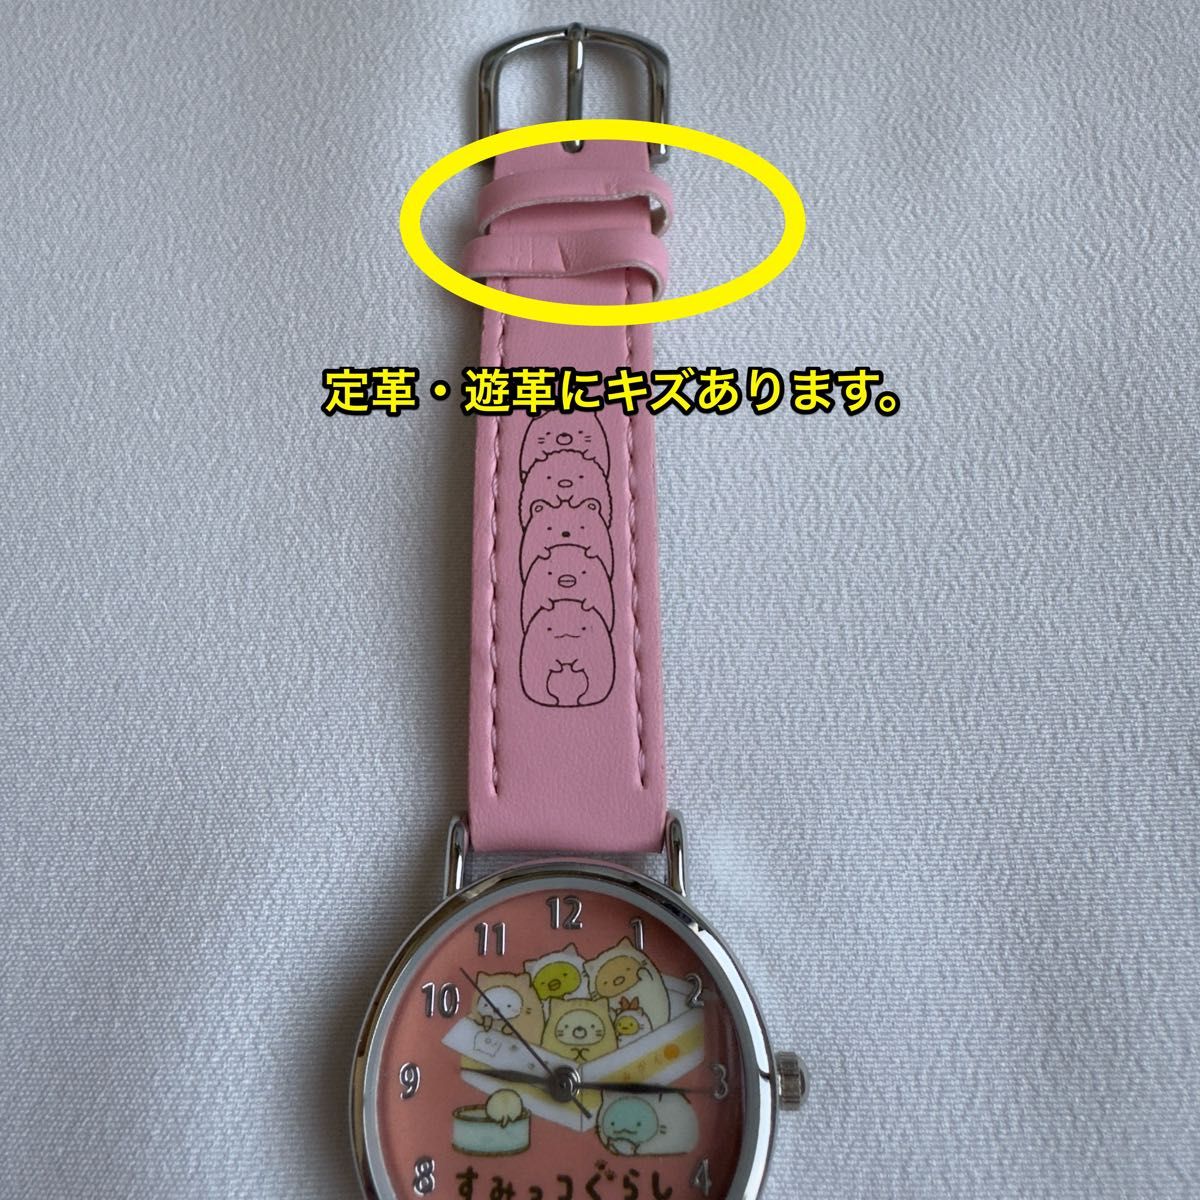 すみっコぐらし 未使用 腕時計 展示処分品  電池交換サービス